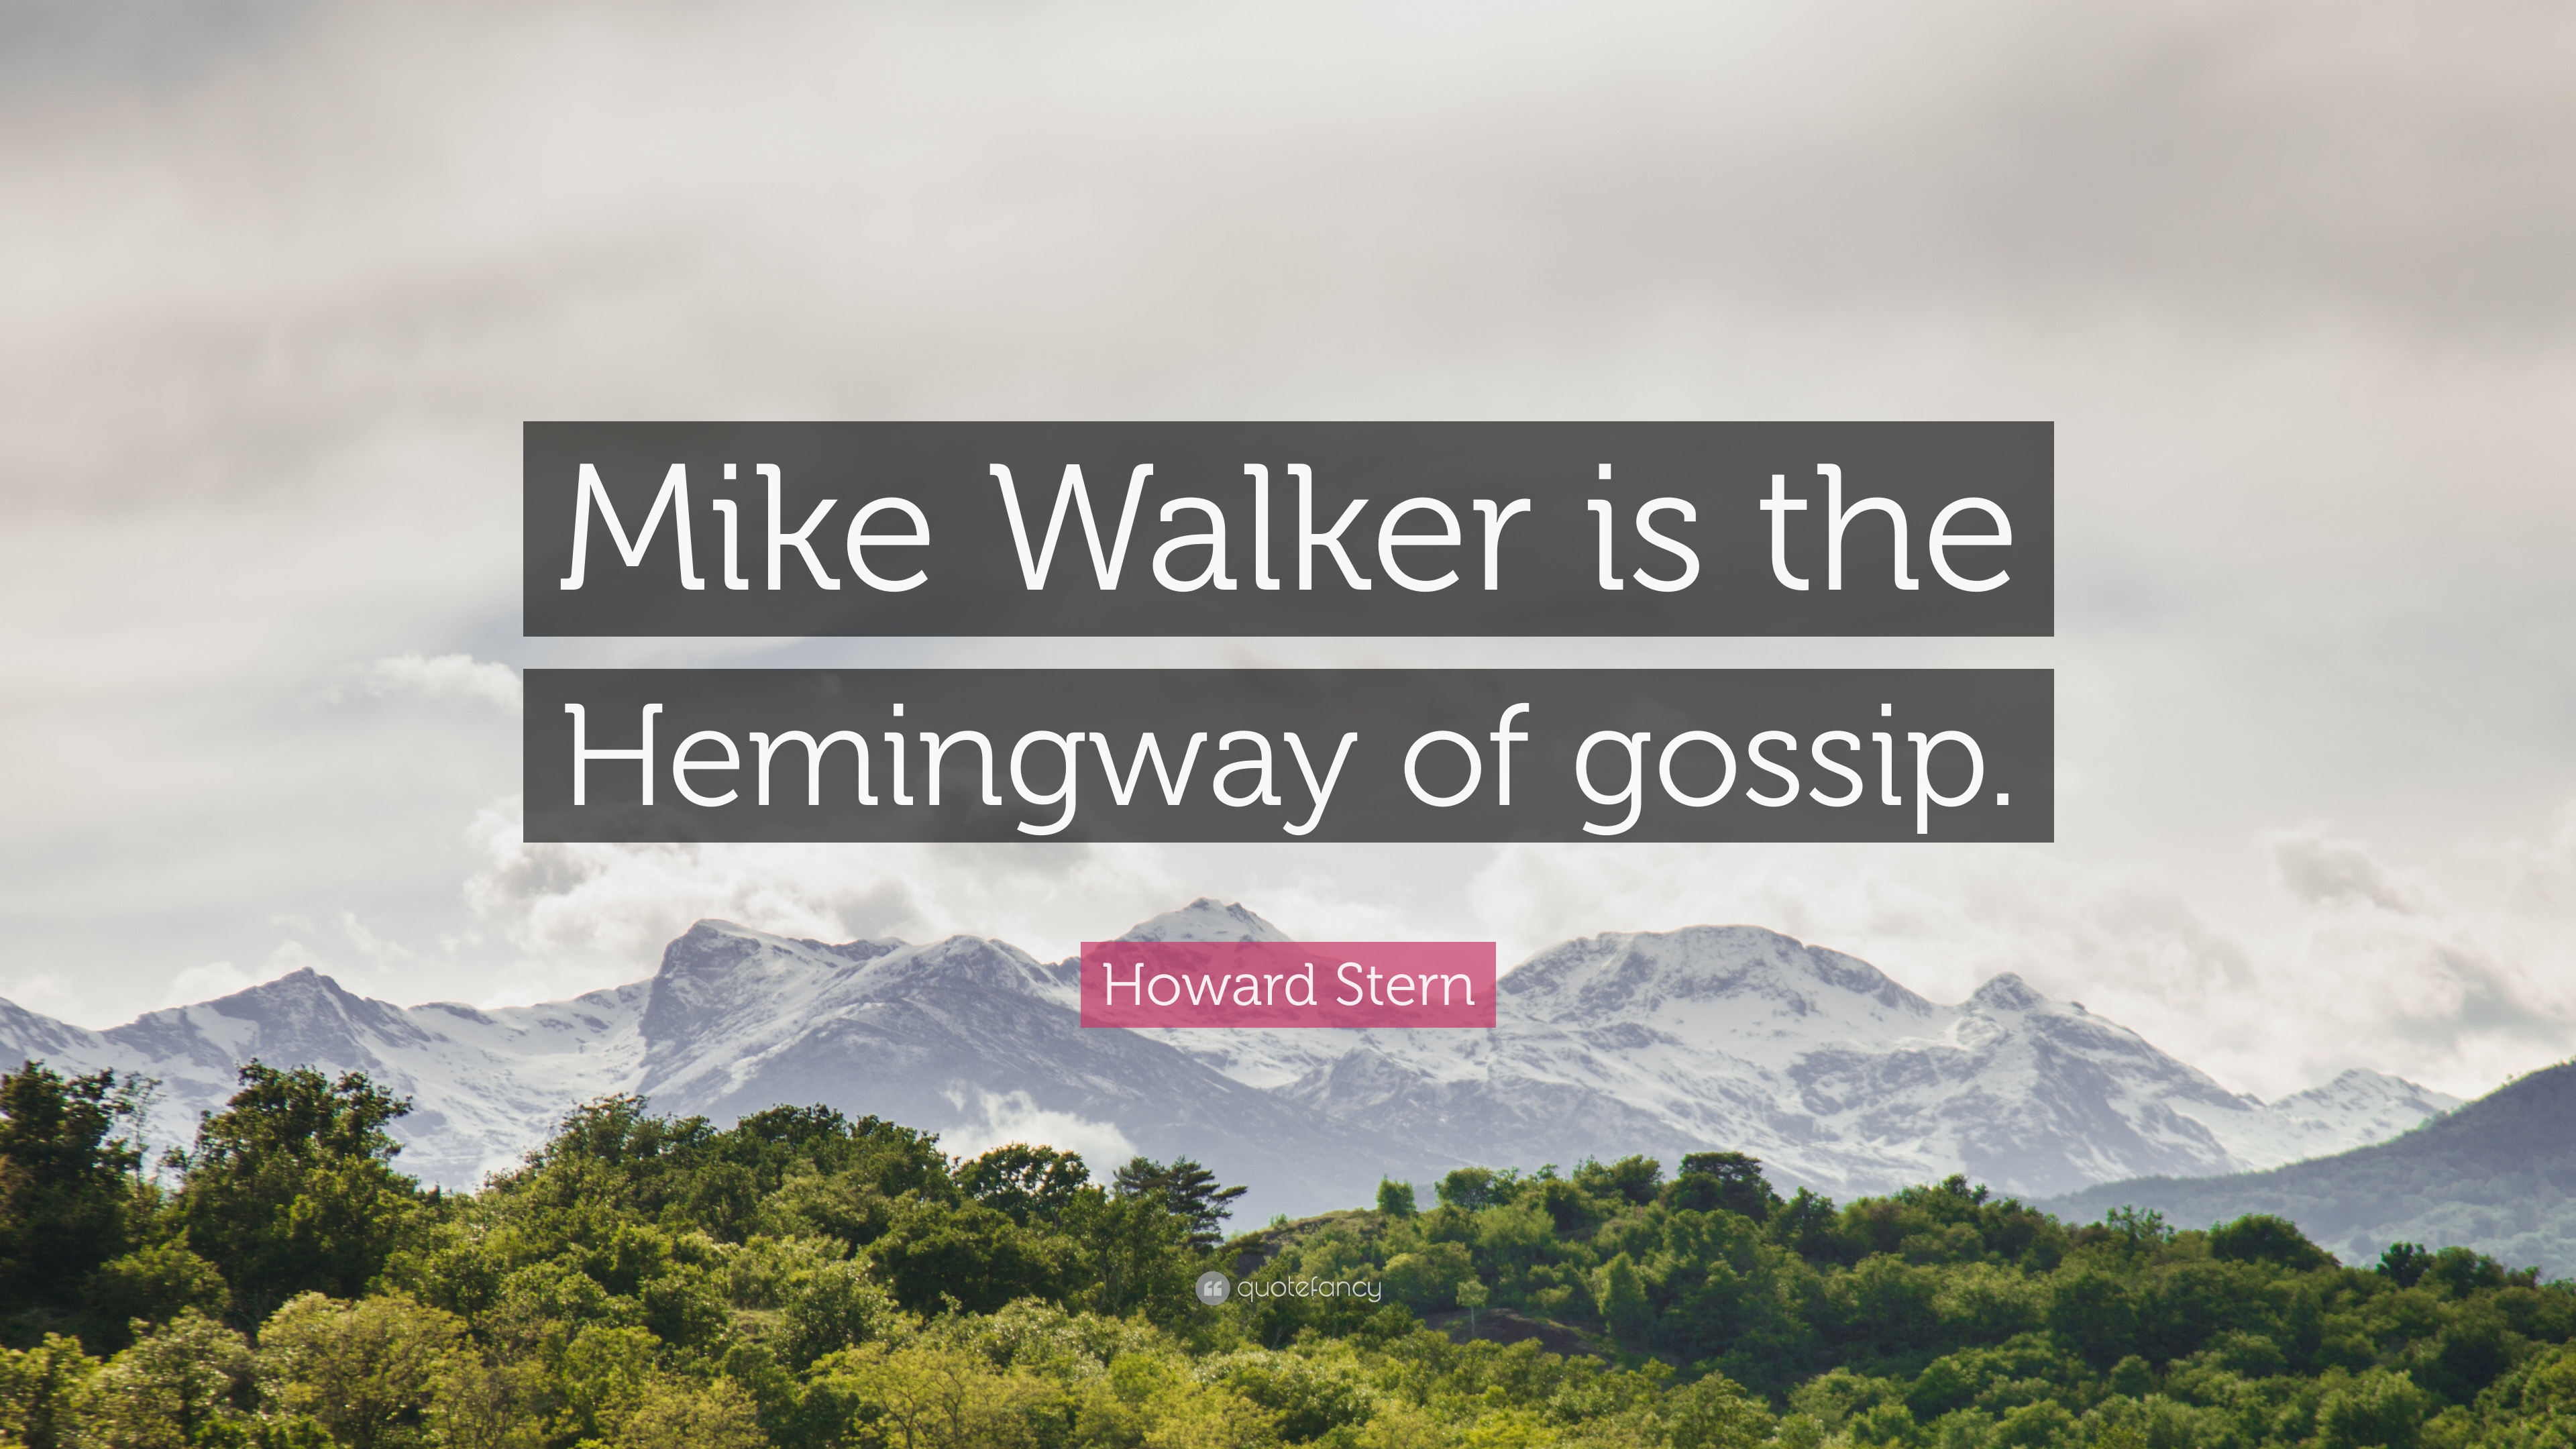 Howard Stern Quote: “Mike Walker is the Hemingway of gossip.” 7